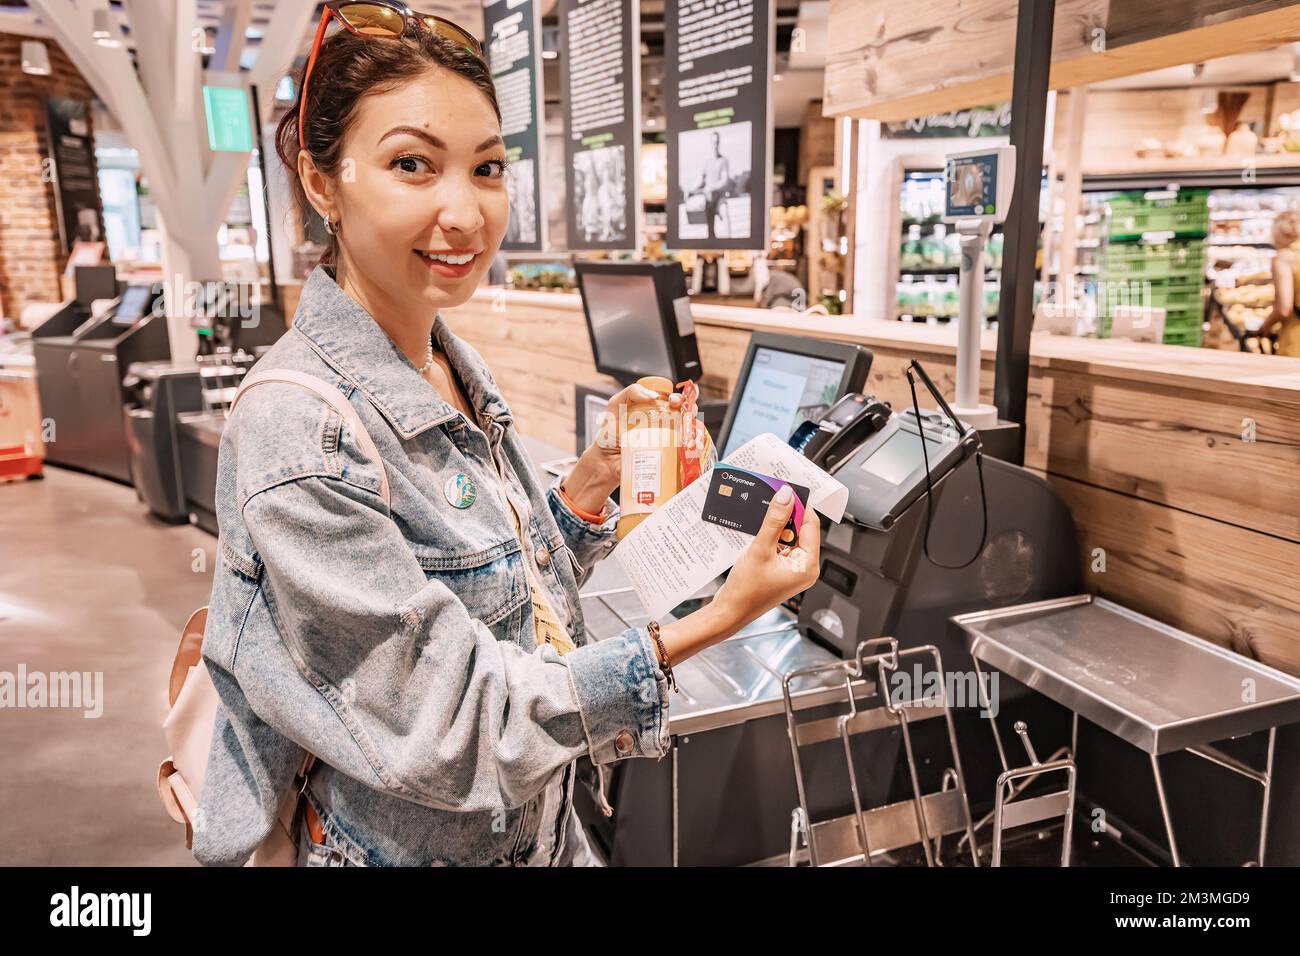 30. Juli 2022, Köln, Deutschland: Weibliche Käufer belastet das POS-Terminal mit einer Kreditkarte, um Einkäufe an der Self-Service-Kasse zu bezahlen Stockfoto